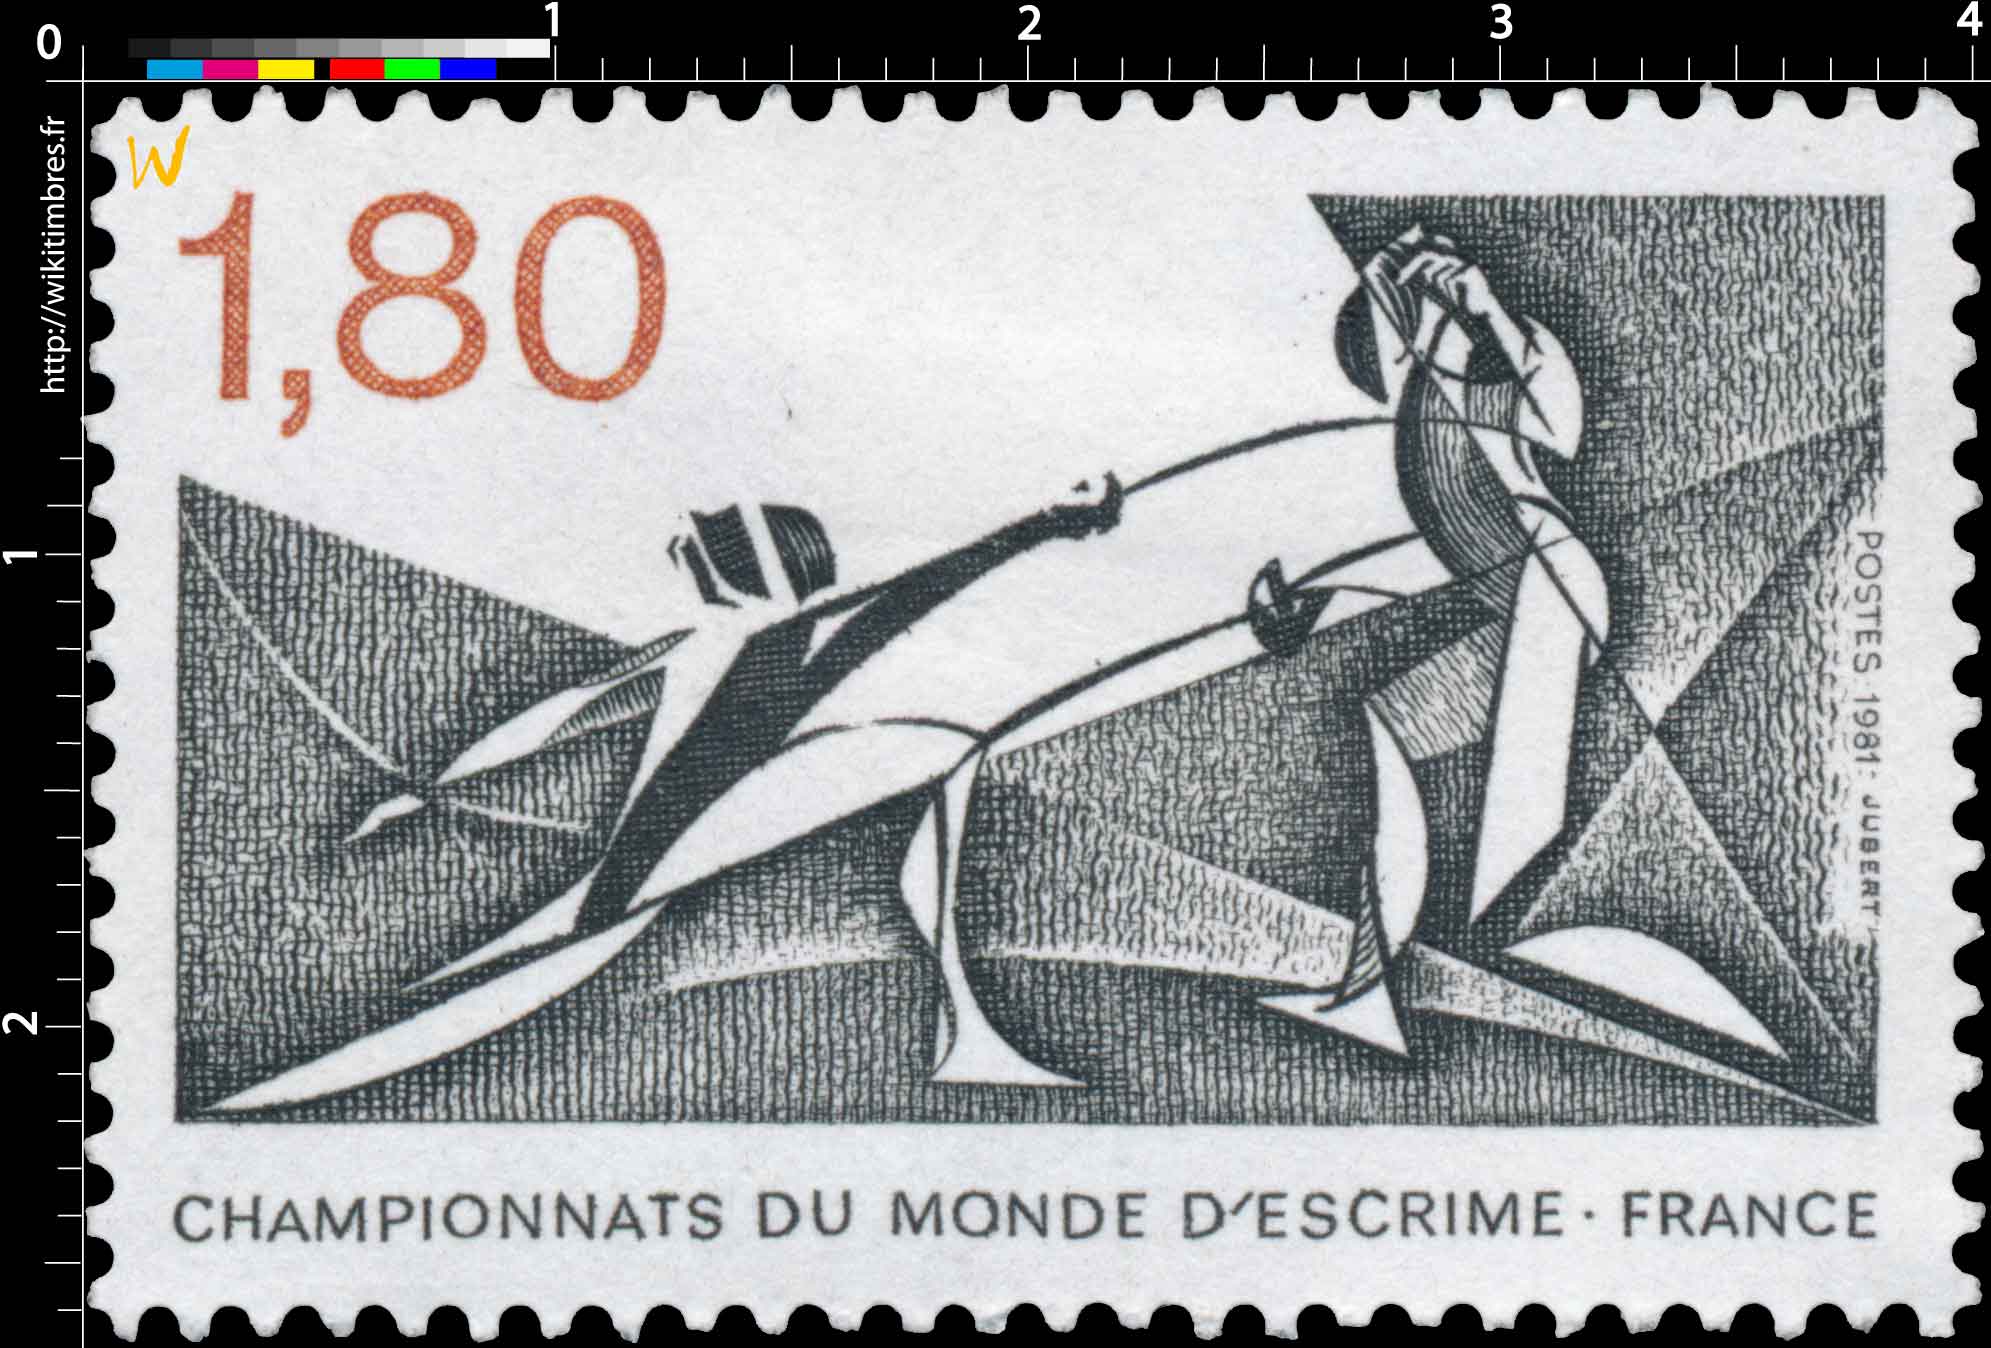 1981 CHAMPIONNATS DU MONDE D'ESCRIME